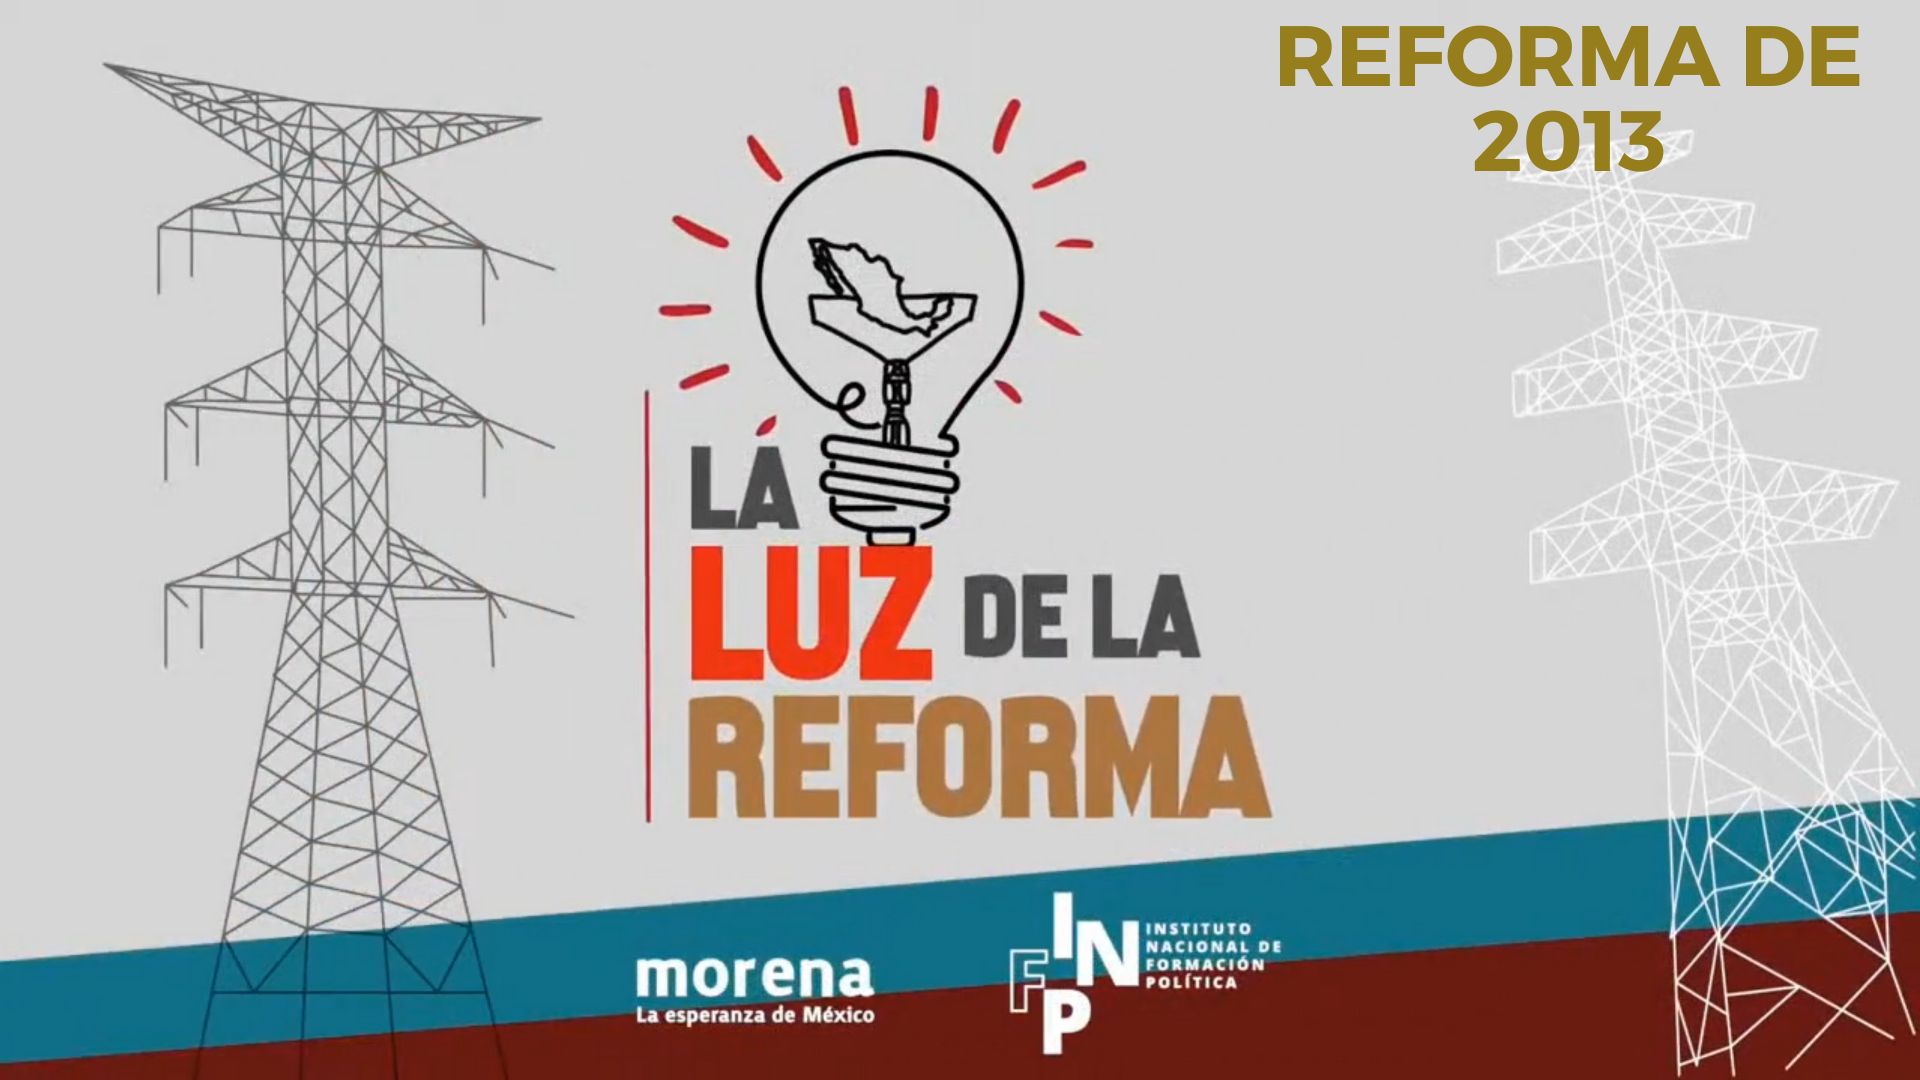 La Luz de la Reforma – Reforma de 2013